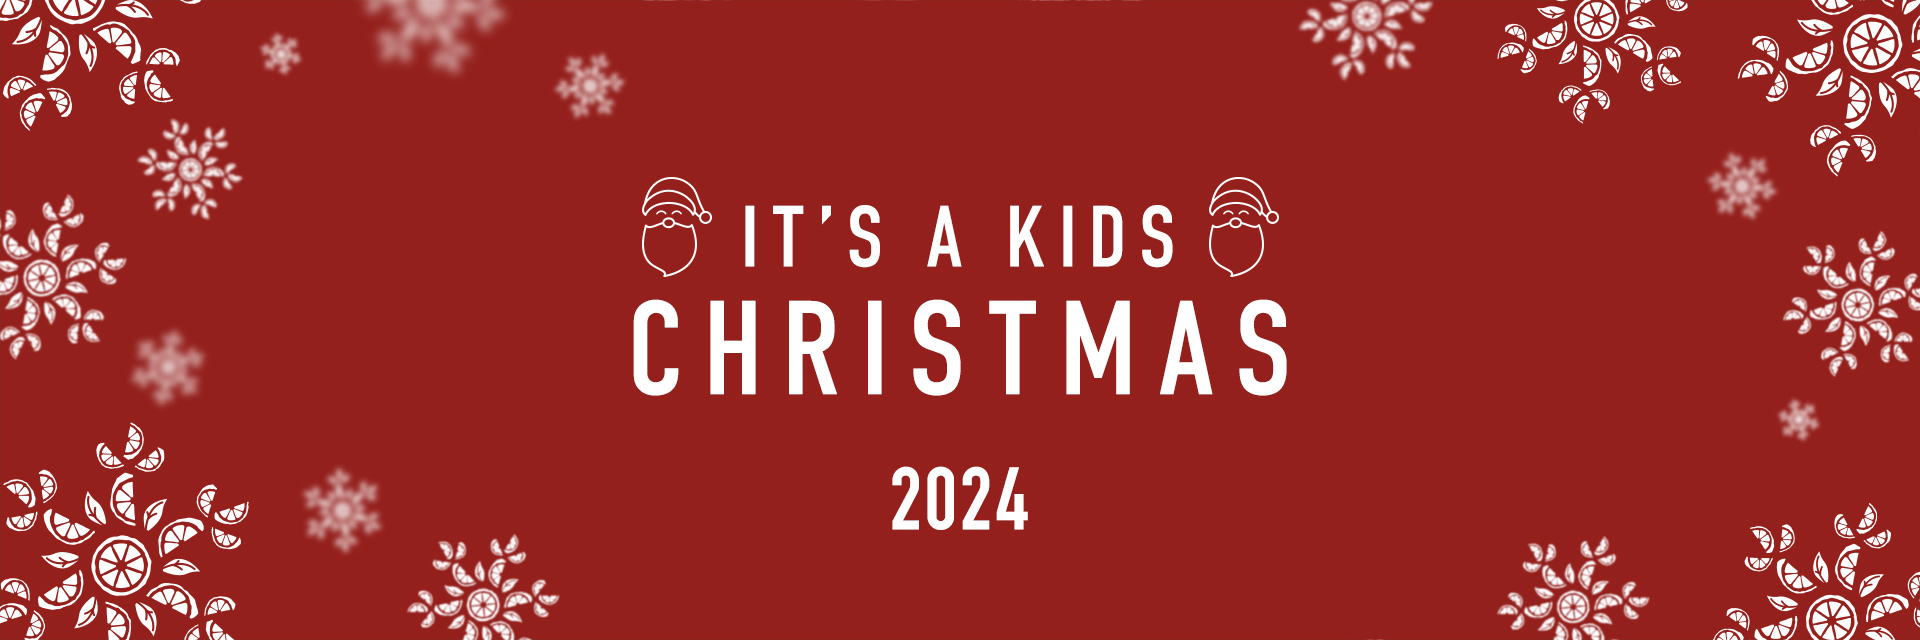 Kids Christmas Menu 2024 at HORSE & GROOM SIDCUP